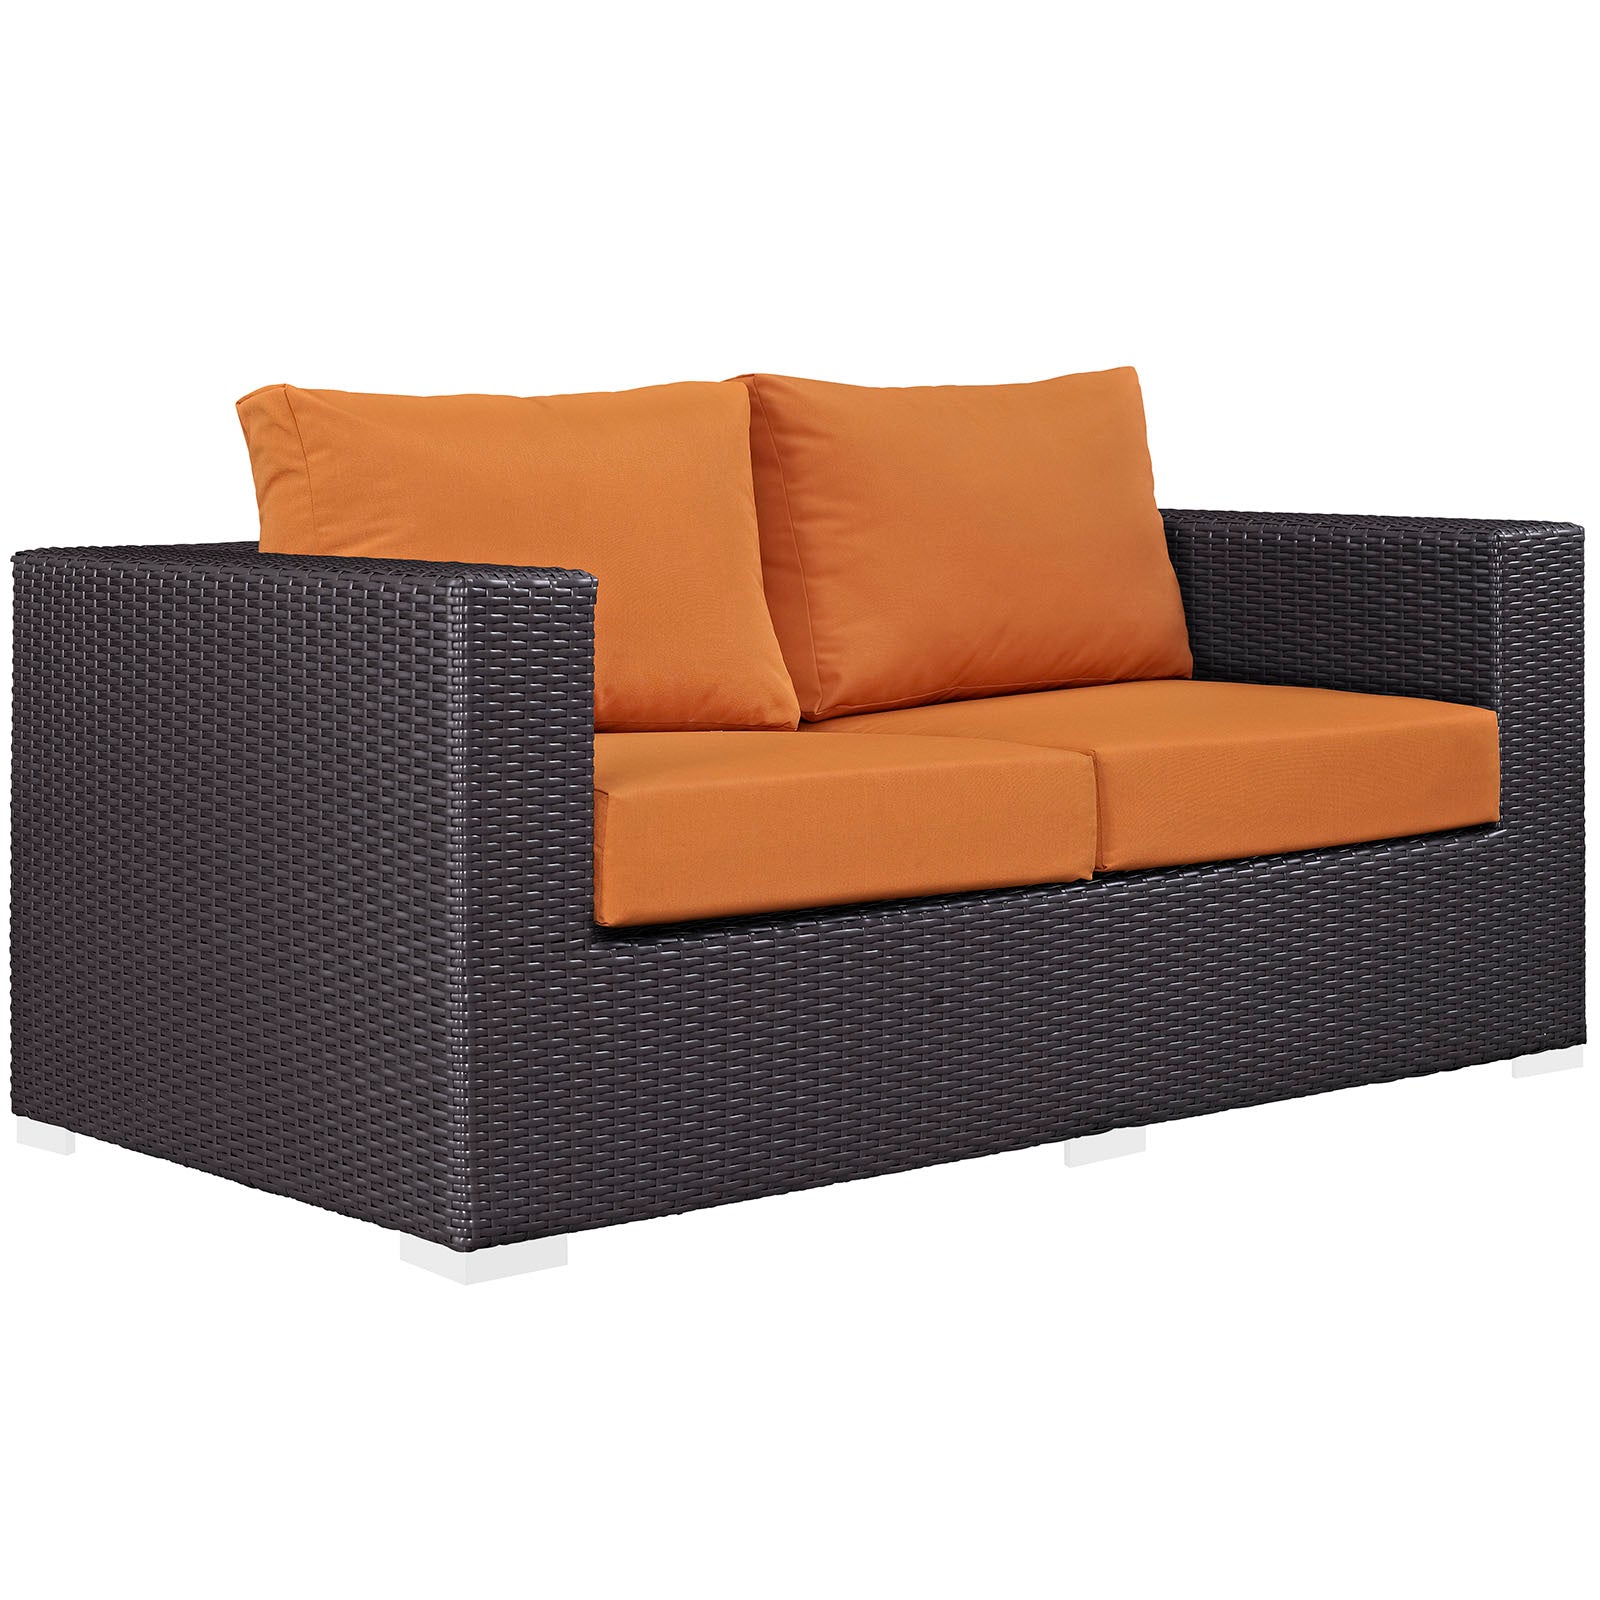 Modway Outdoor Conversation Sets - Convene 8 Piece Outdoor Patio Sofa Set Espresso Orange